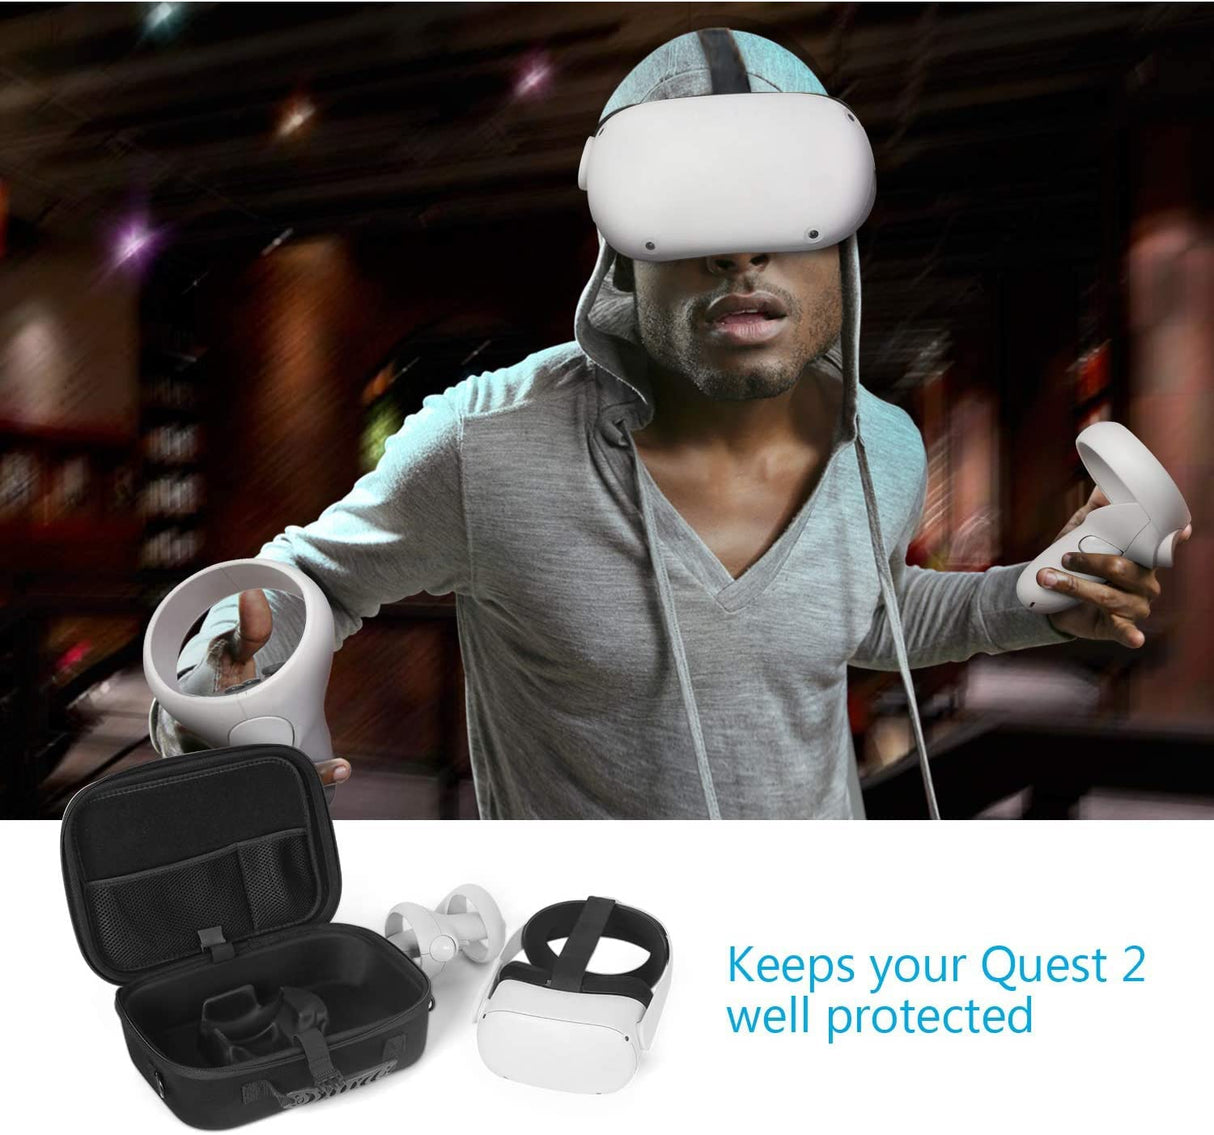 Funda de silicona VR para auriculares Oculus/Meta Quest 2, gafas a